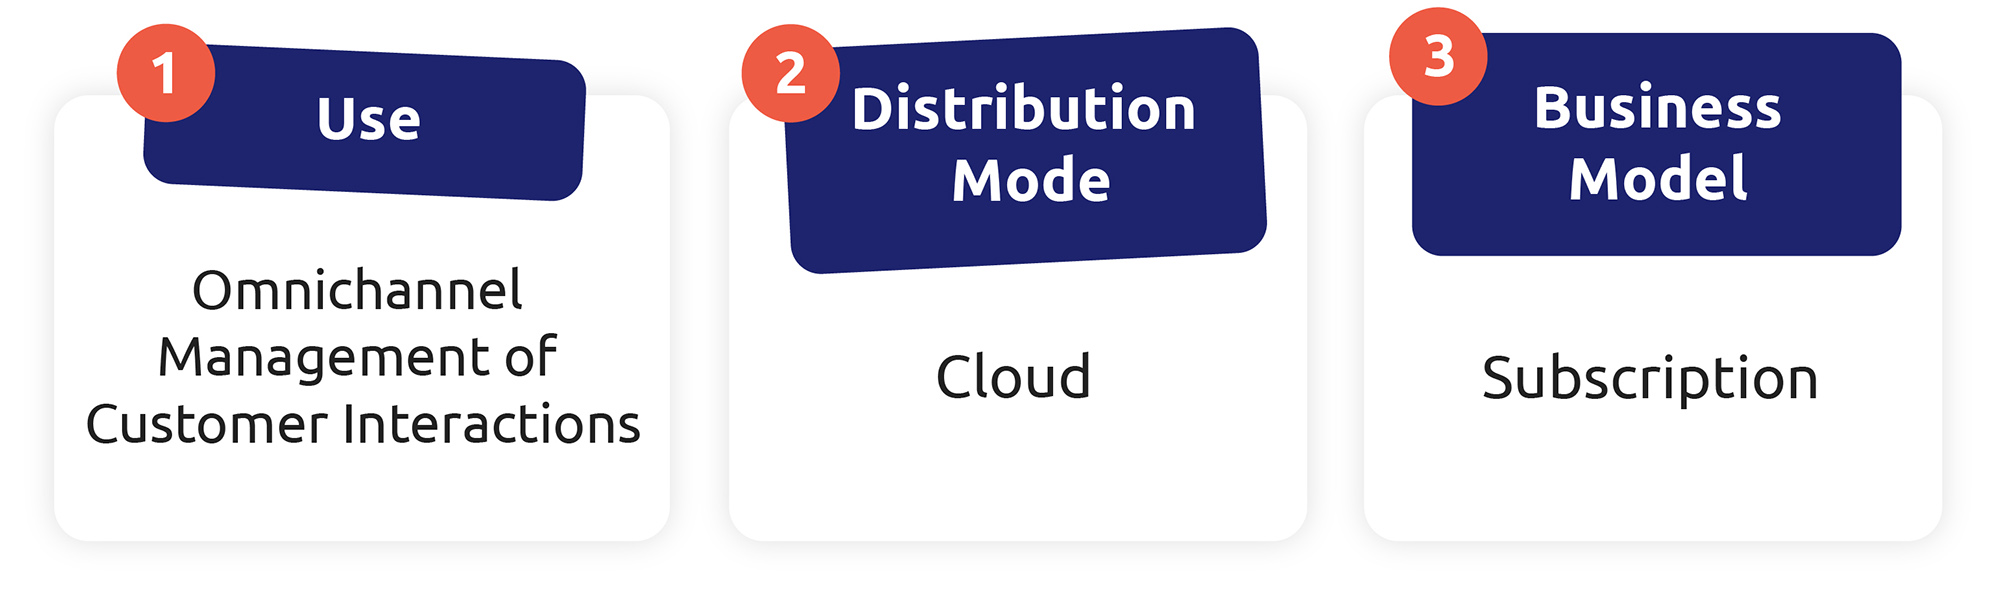 Le tre caratteristiche di un CCaaS sono: gestione omnichannel, distribuzione basata su cloud e sistema di abbonamento. 